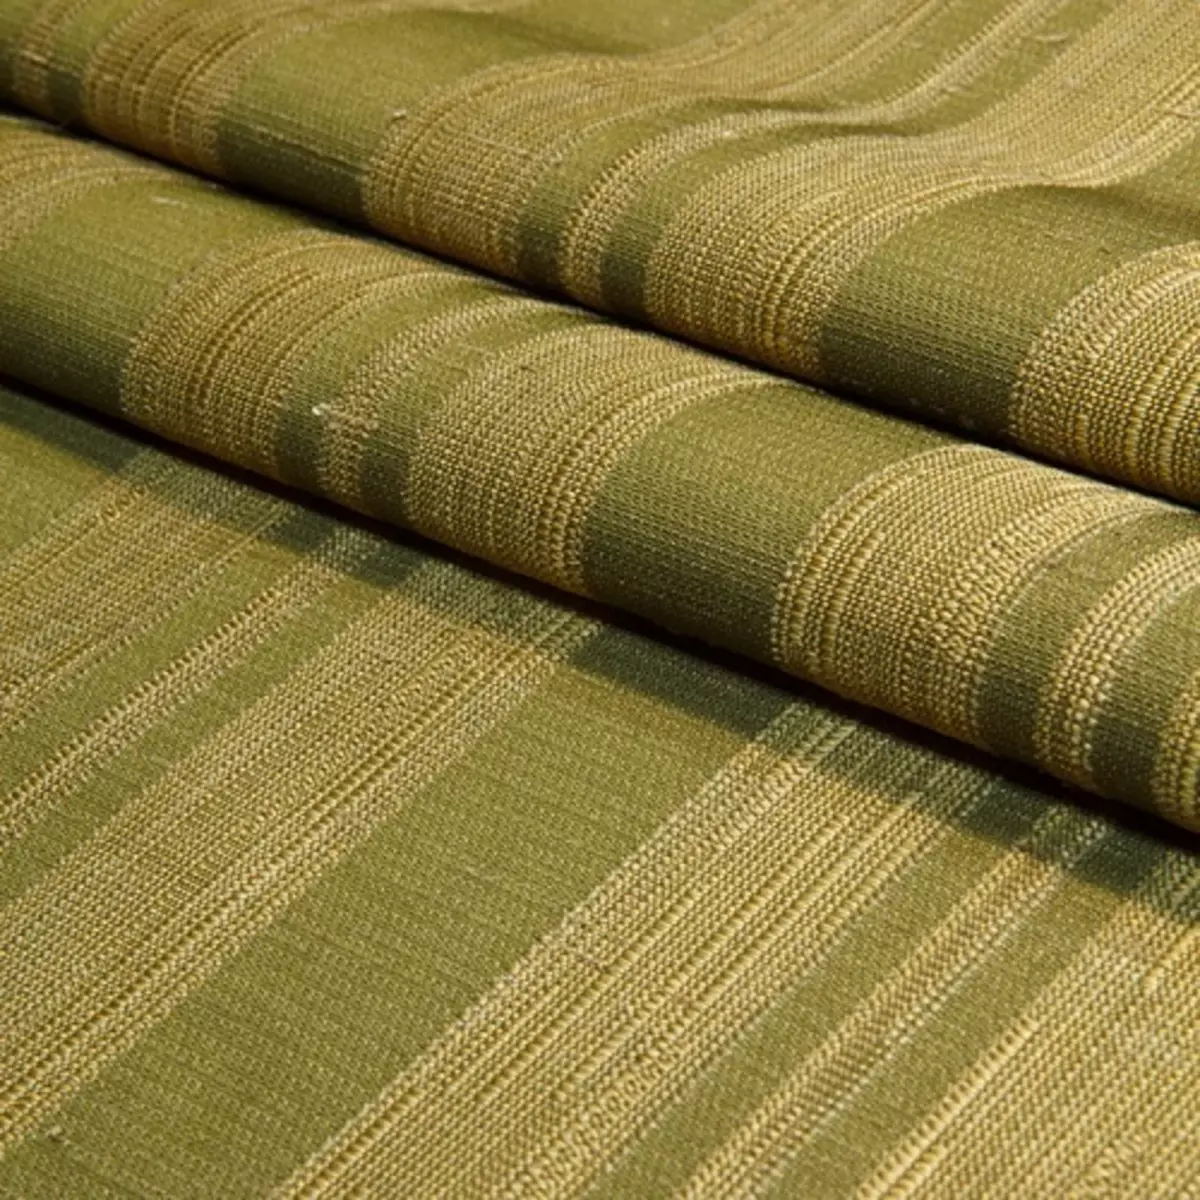 绿色窗帘在客厅内部（51张照片）：绿色窗帘设计在大厅里。内部深绿色和其他色调的窗帘 9790_35